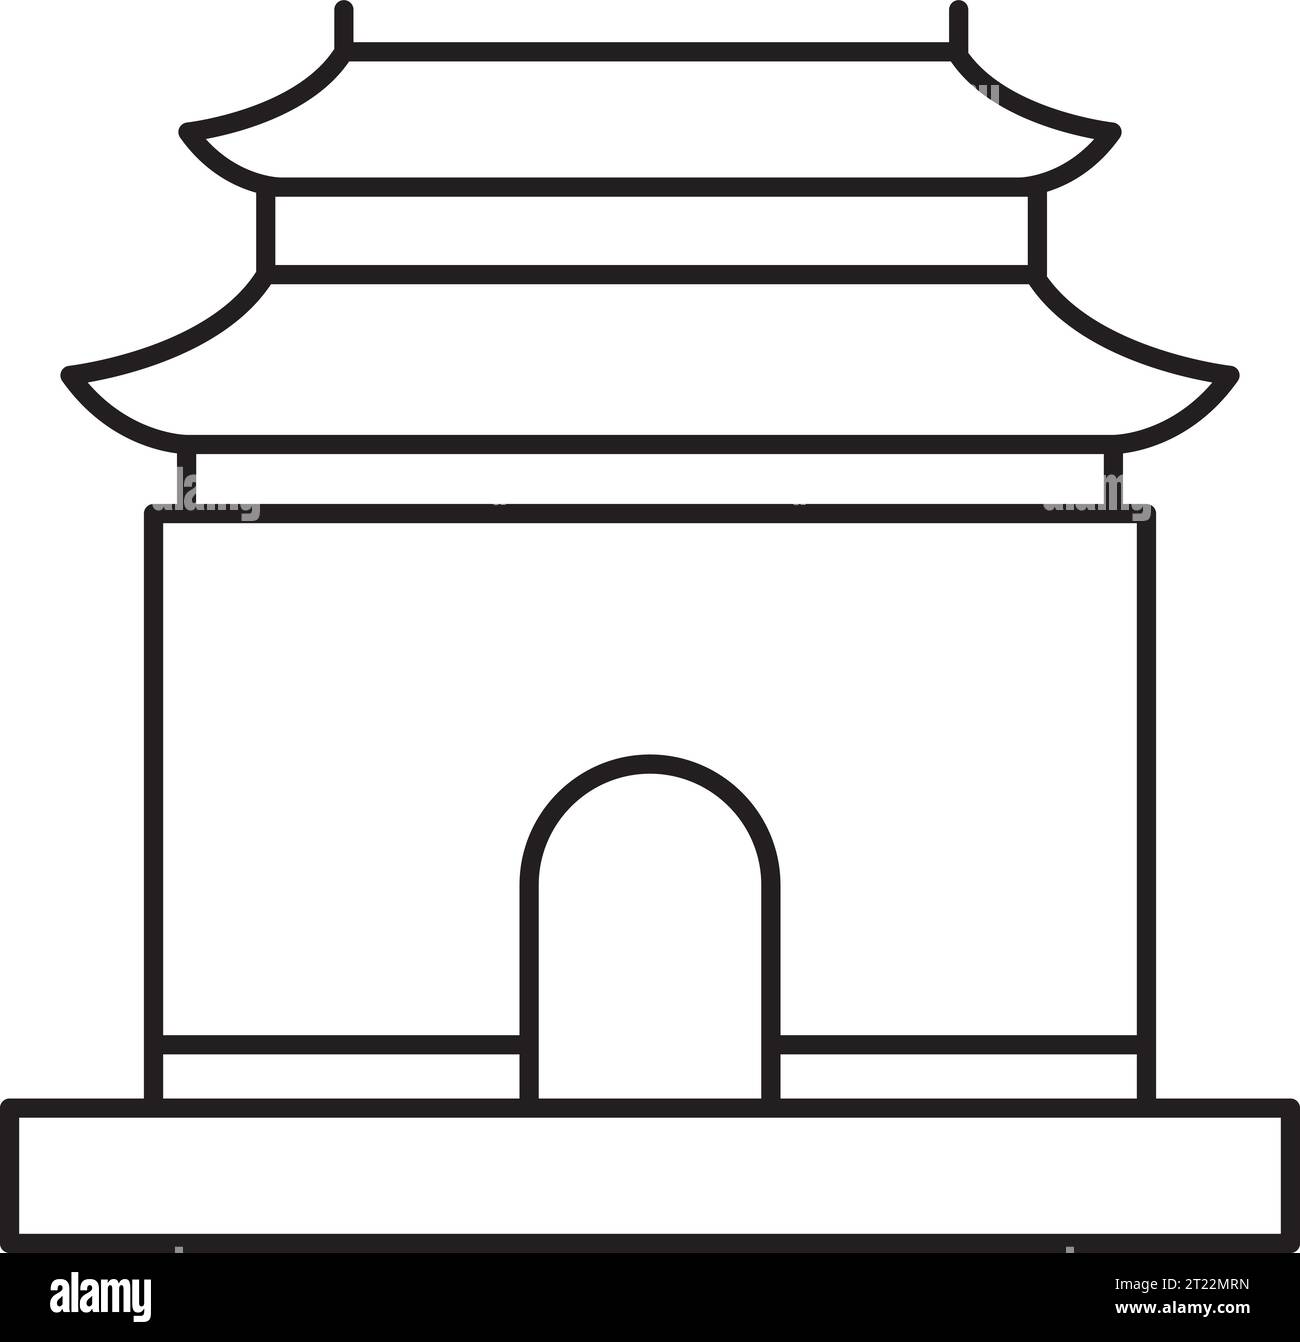 Semplice disegno nero delle TOMBE DELLA DINASTIA MING, PECHINO Illustrazione Vettoriale